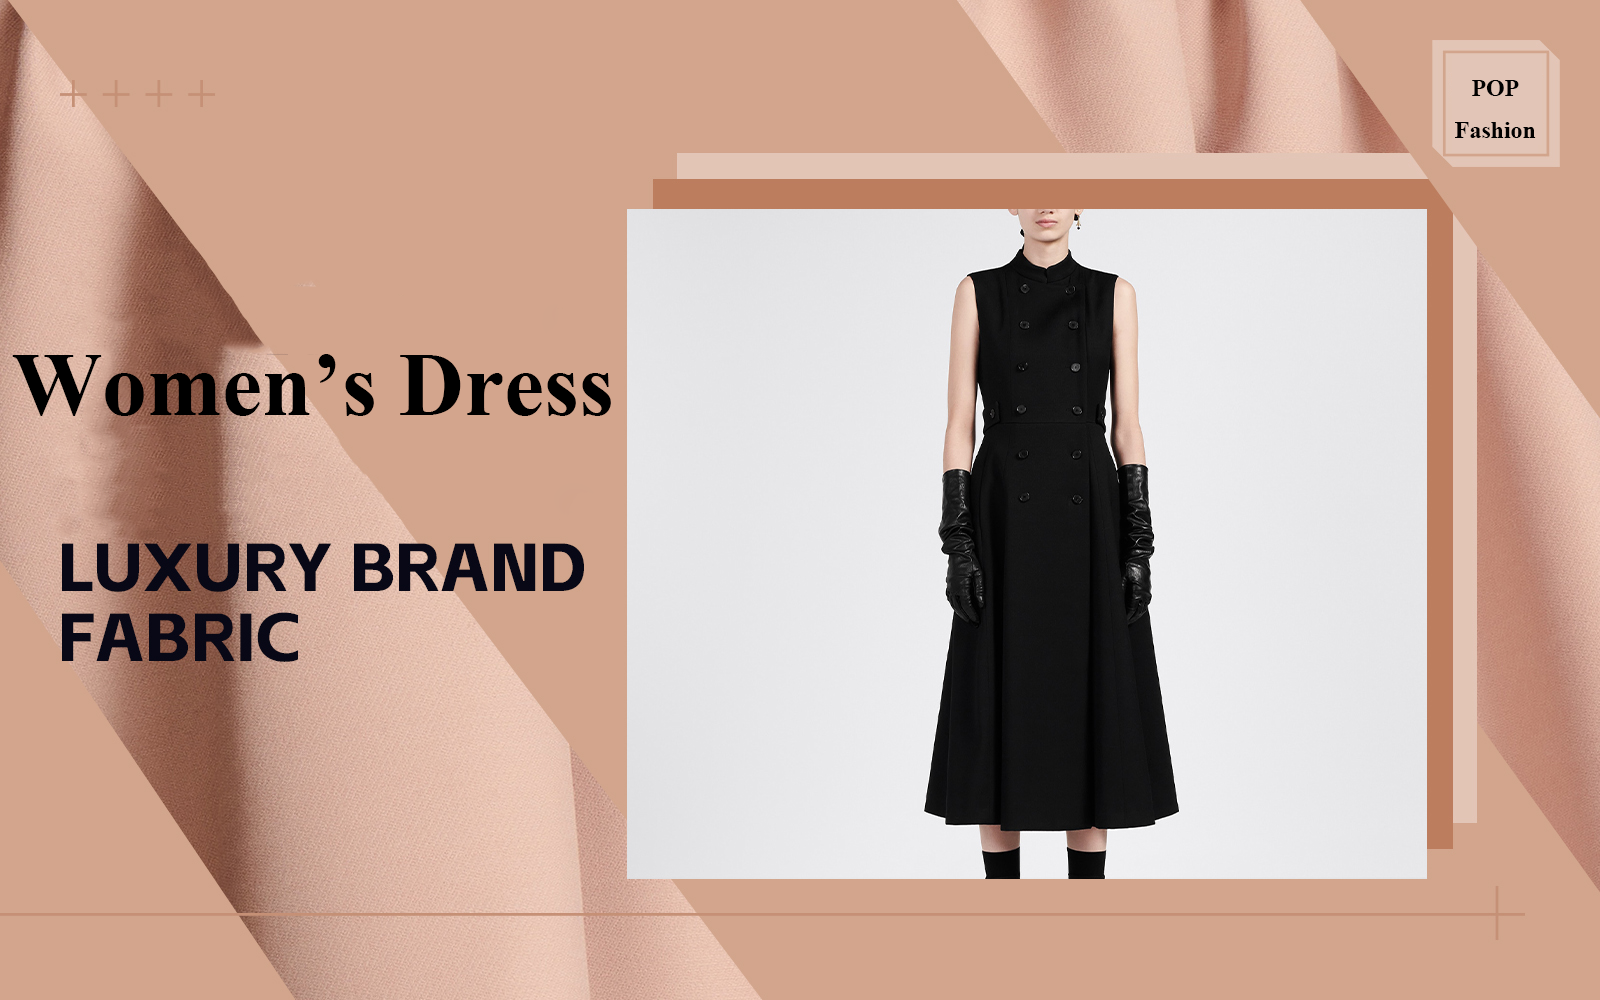 Women's Dress -- The Fabric Analysis of Luxury Brand